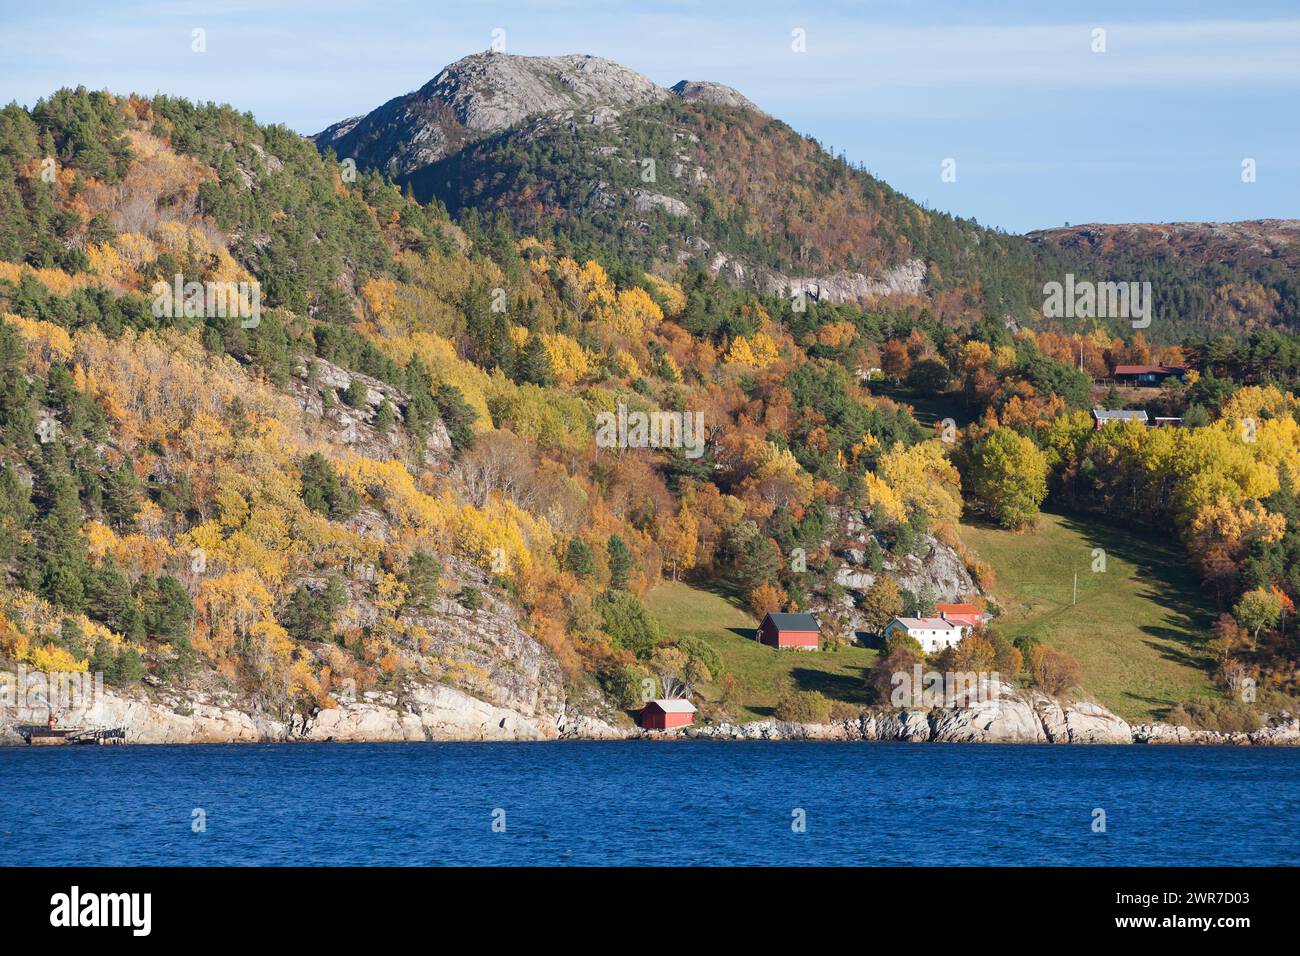 Paysage côtier norvégien, maisons en bois colorées sont sur une côte rocheuse Banque D'Images